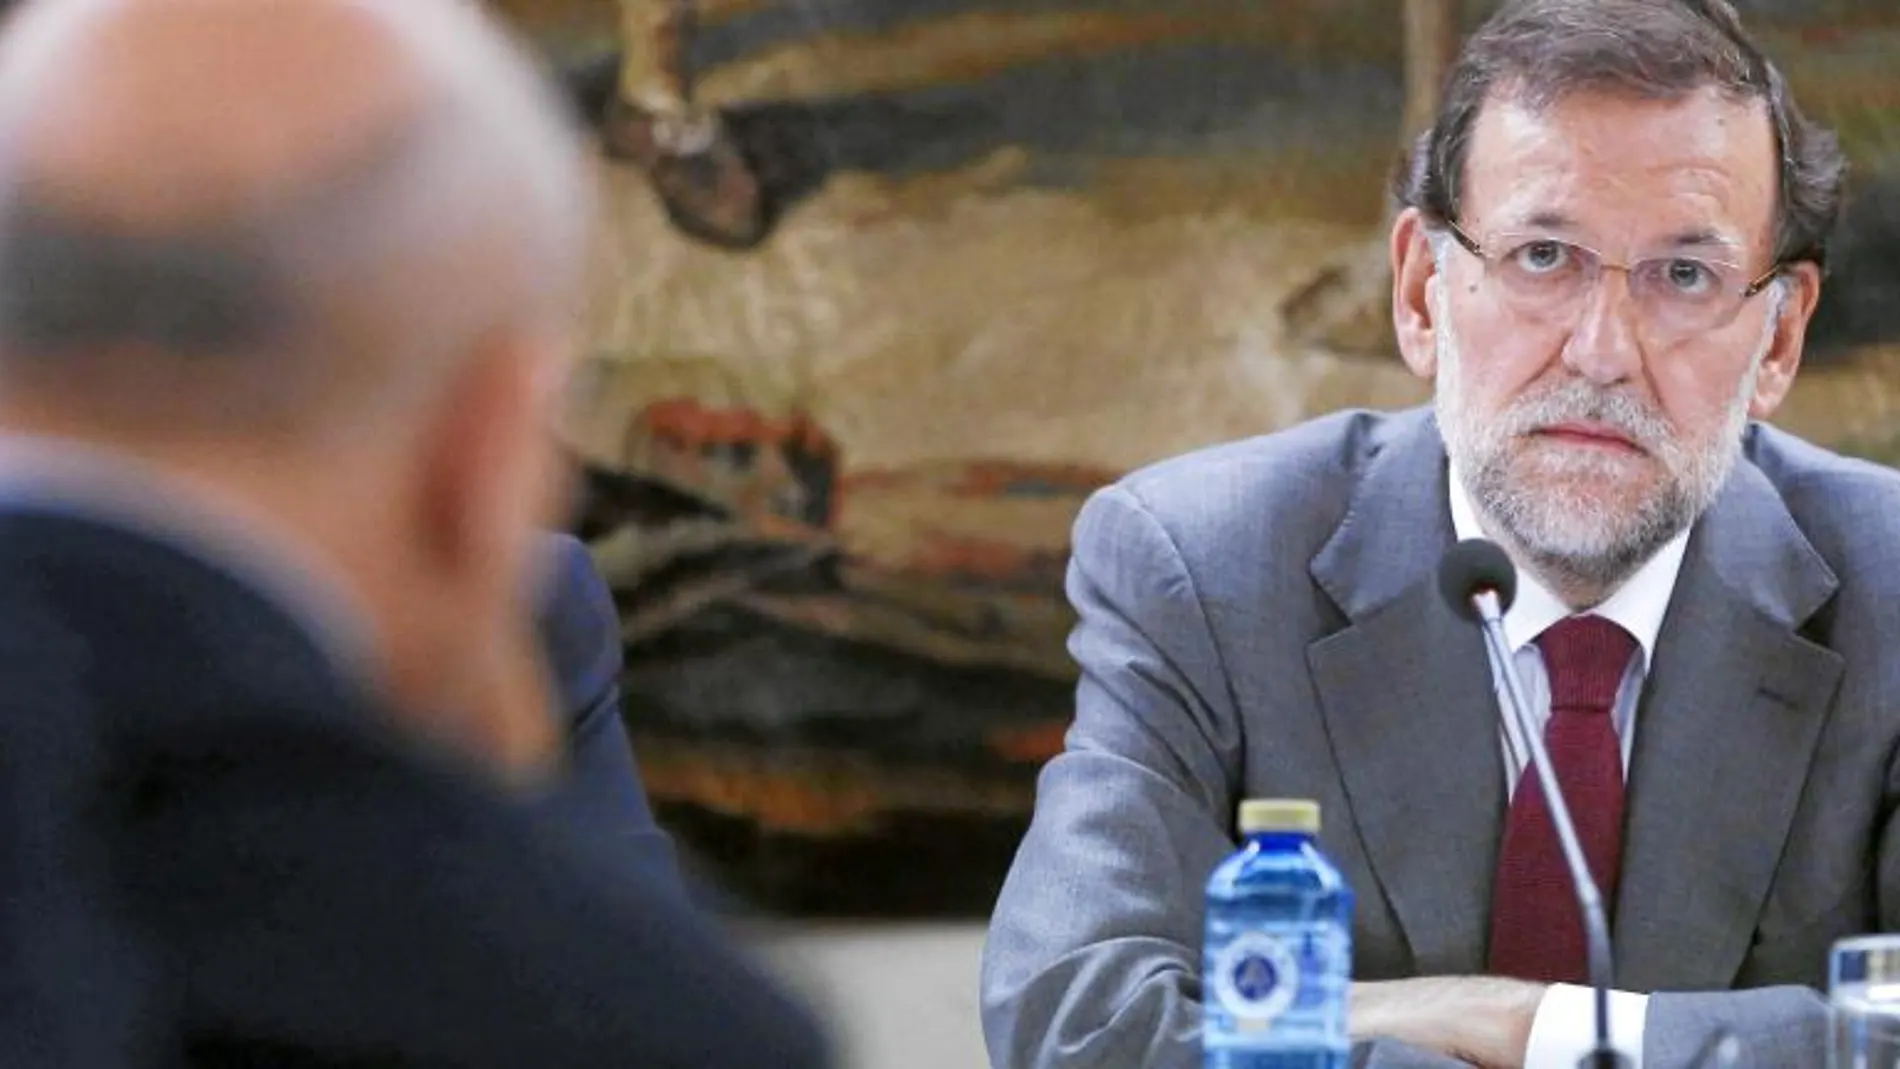 Rajoy acompañó a Wert en la presentación de las obras escogidas del politólogo Linz